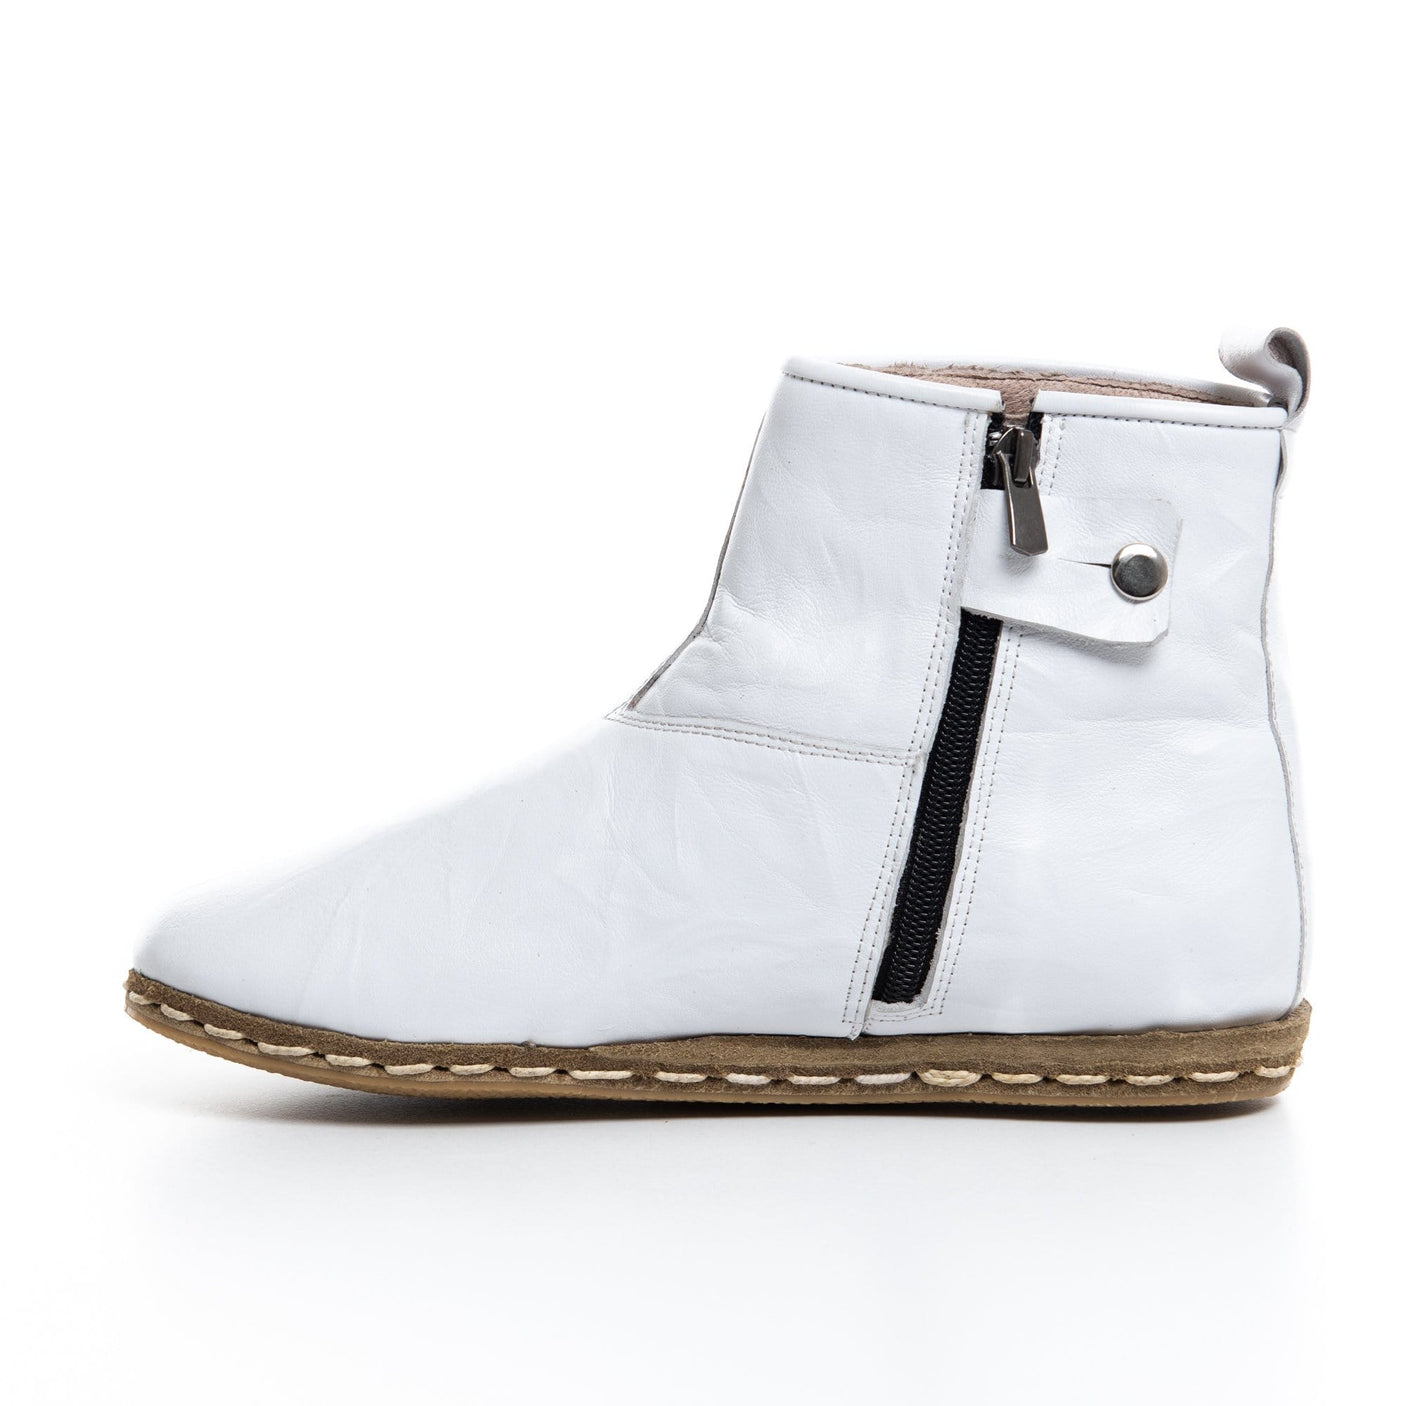 White - Turkish Boots for Women & Men : Atlantis Handmade Shoes